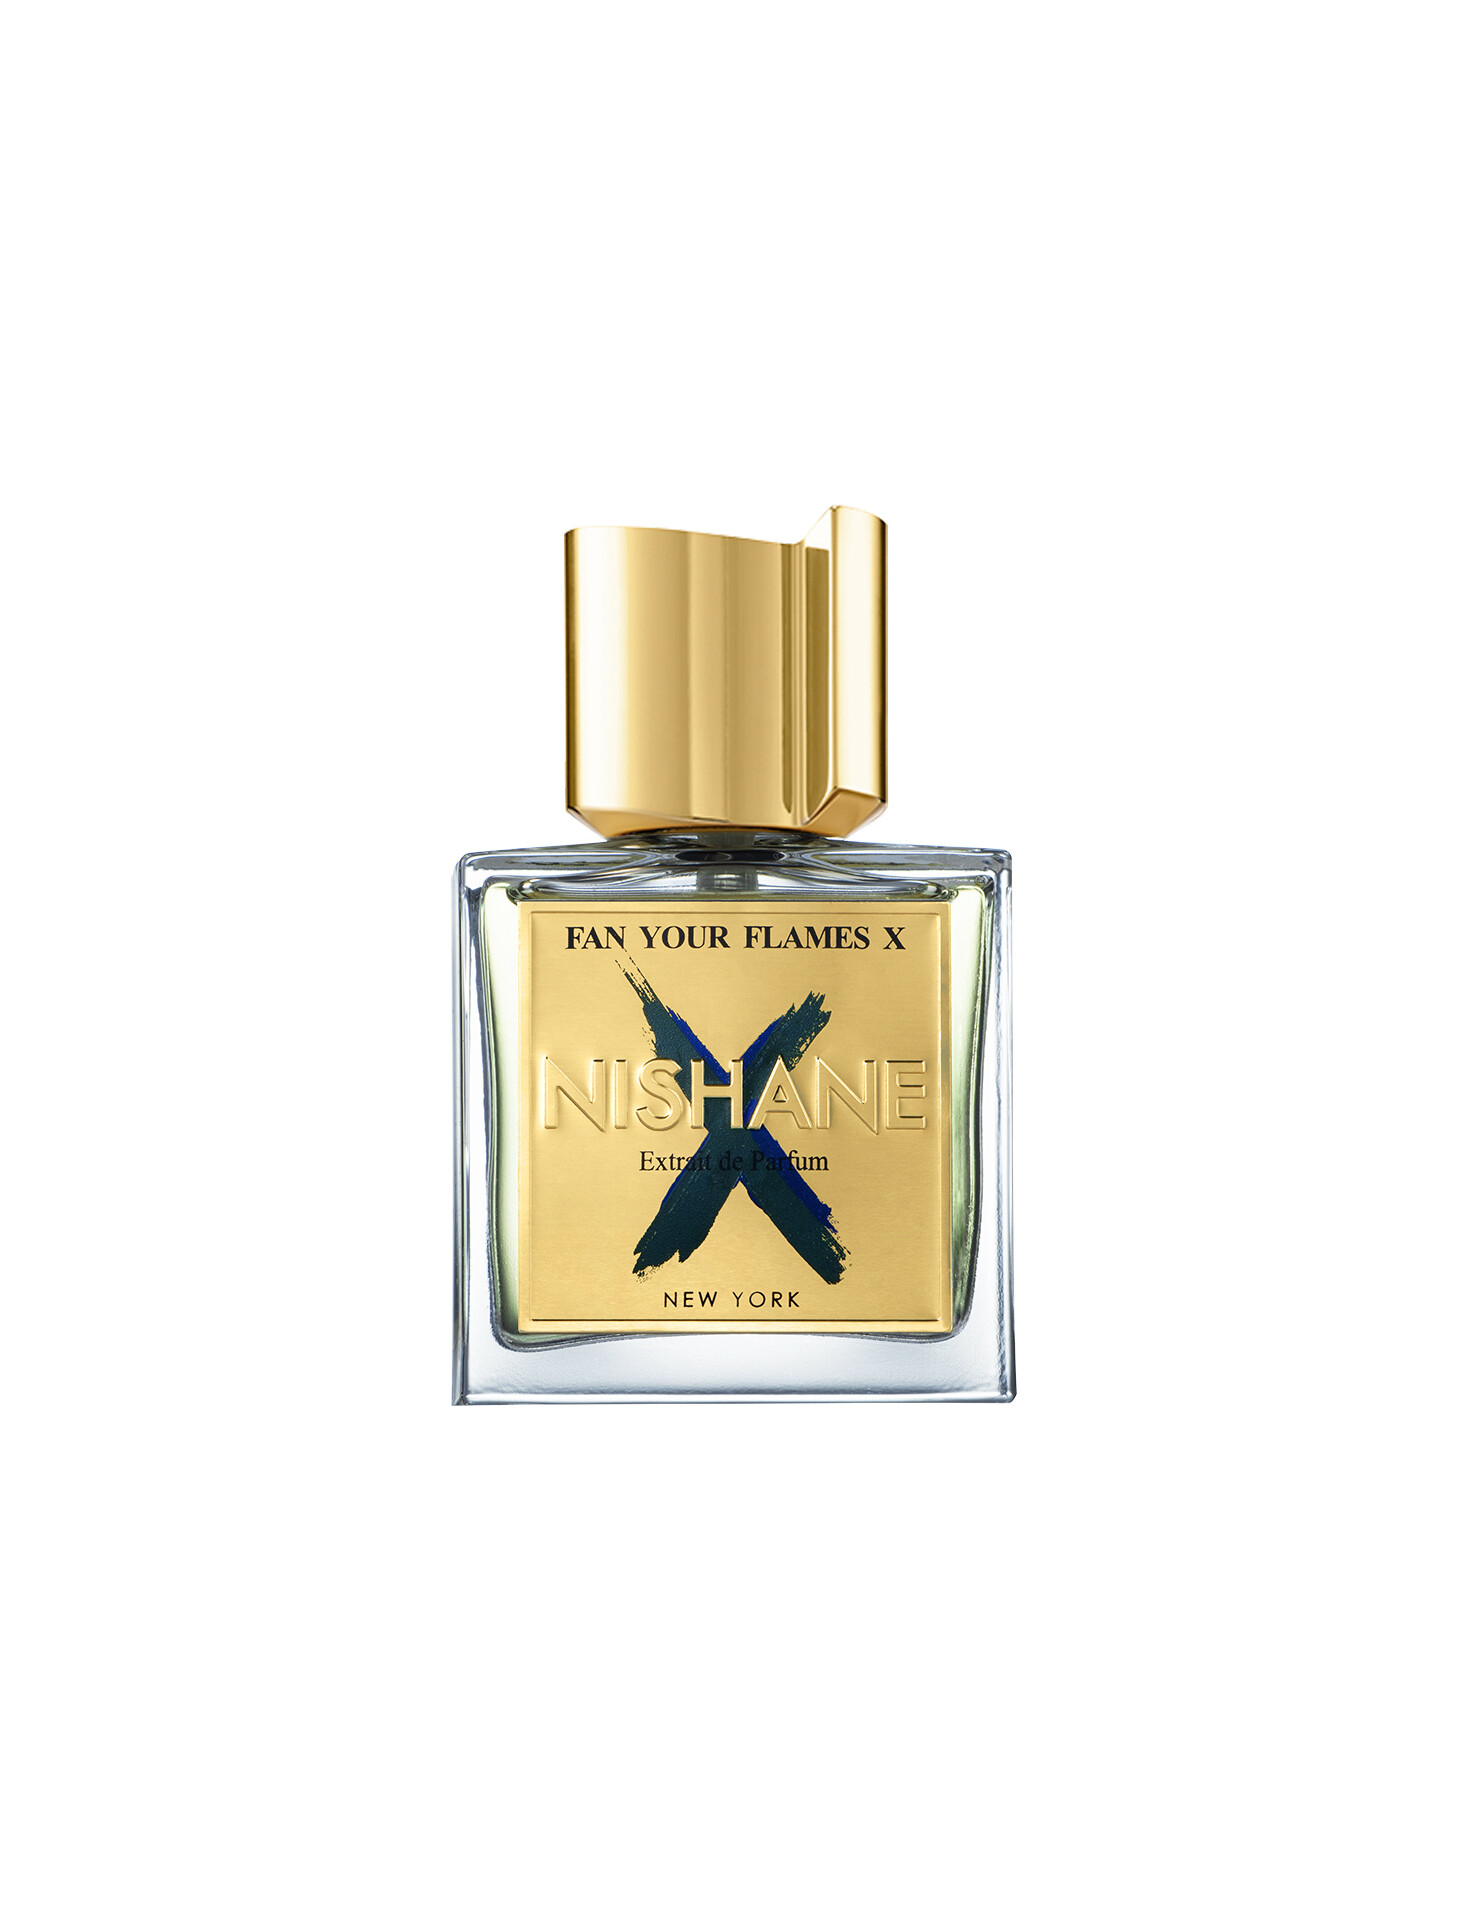 NISHANE Fan Your Flames X Extrait de Parfum 50ml